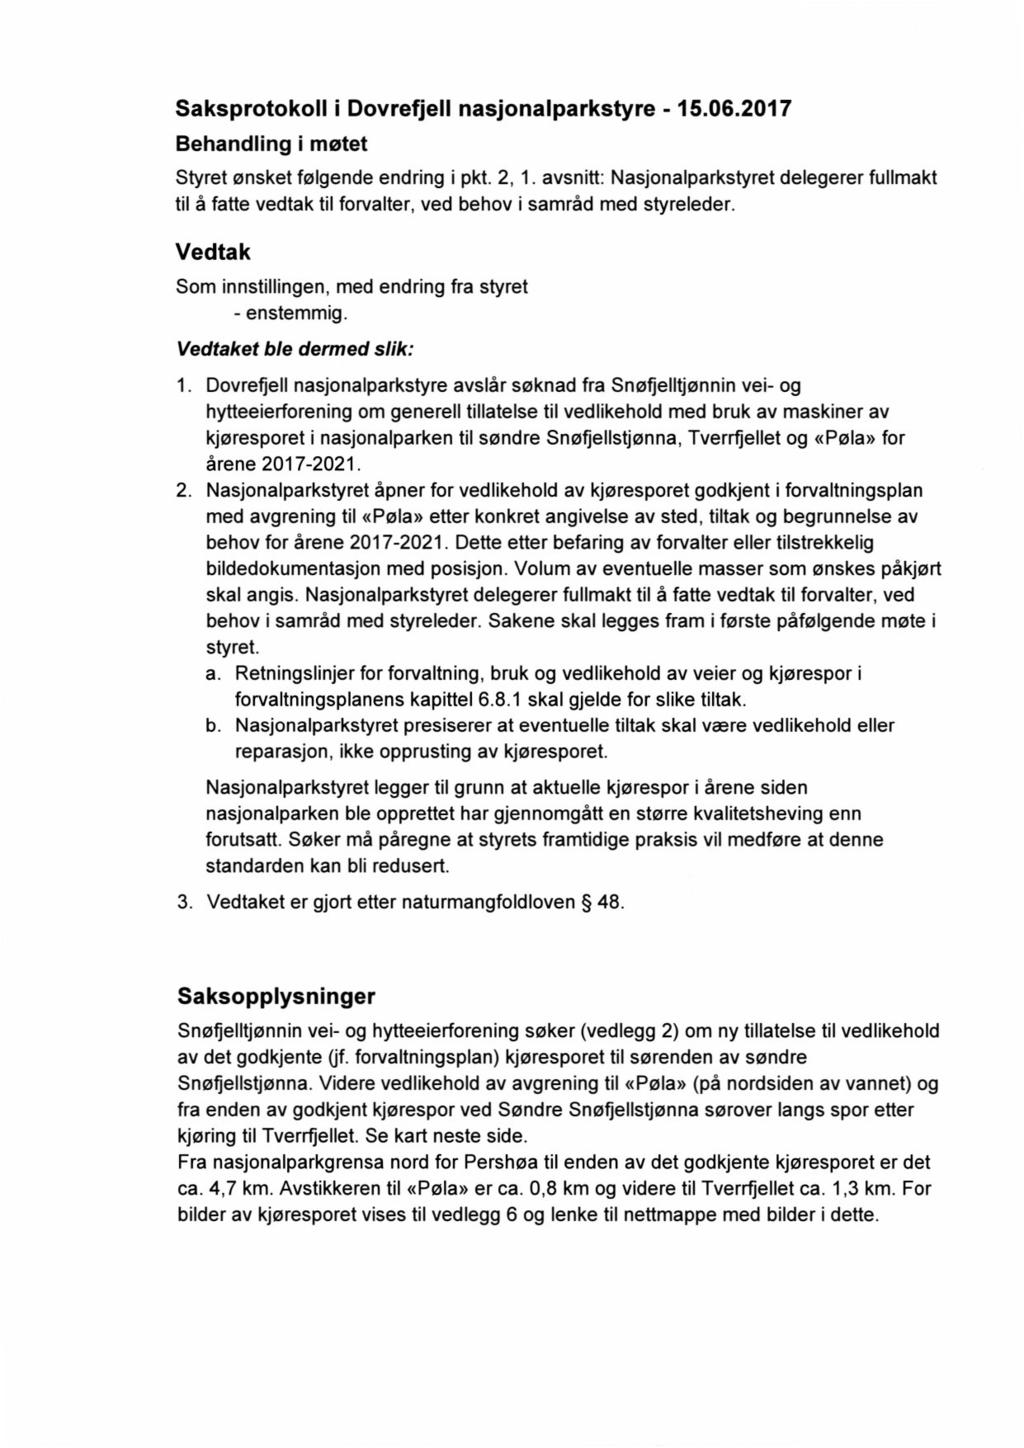 Saksprotokoll i Dovrefjell nasjonalparkstyre - 15.06.2017 Behandling i møtet Styret ønsket følgende endring i pkt. 2, 1.